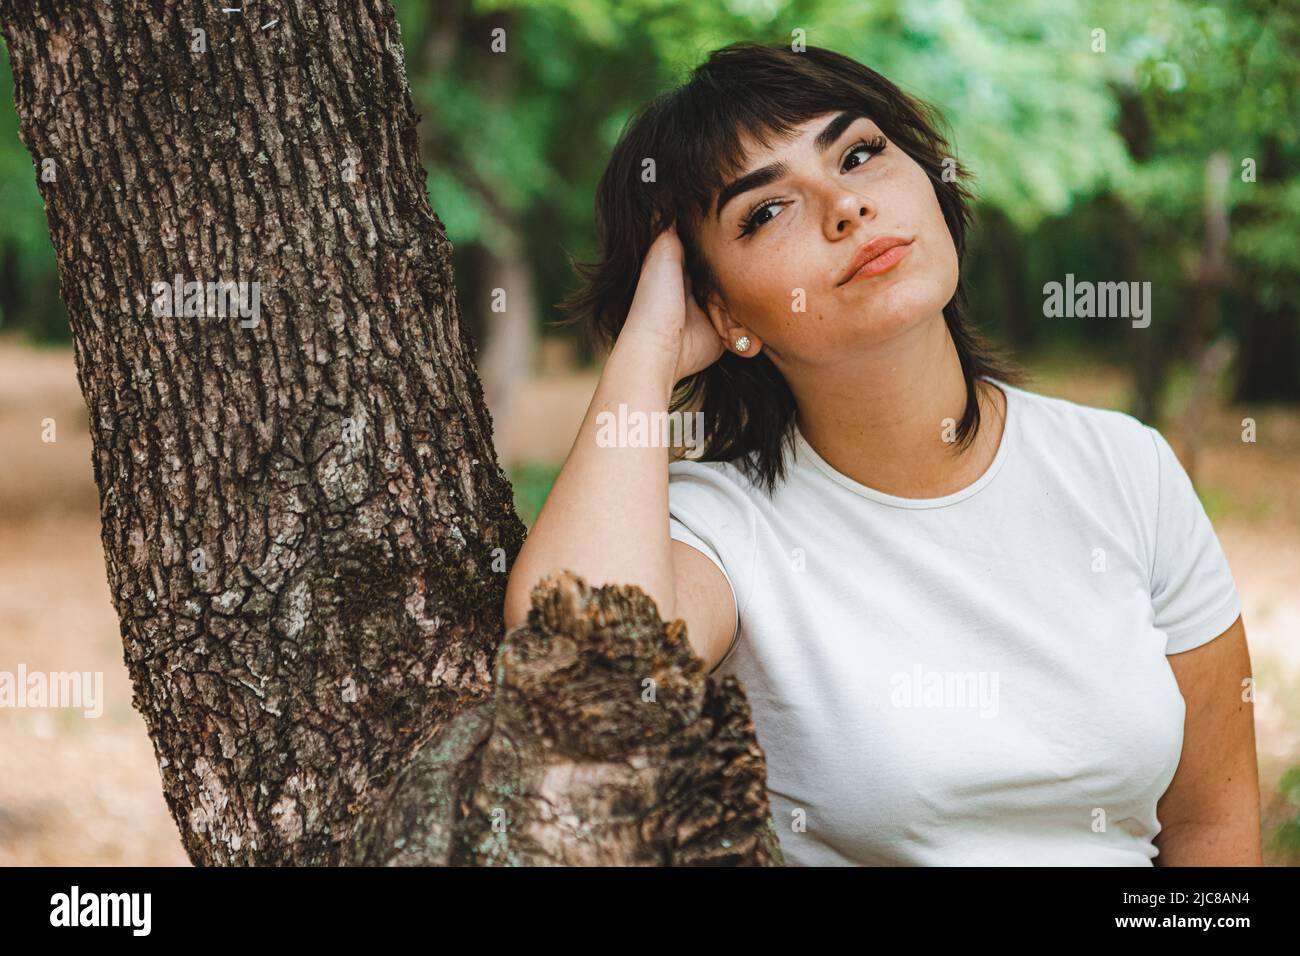 Una giovane ragazza con corti capelli neri, una T-shirt bianca e una gonna nera nel bosco tra alberi verdi e erba verde Foto Stock